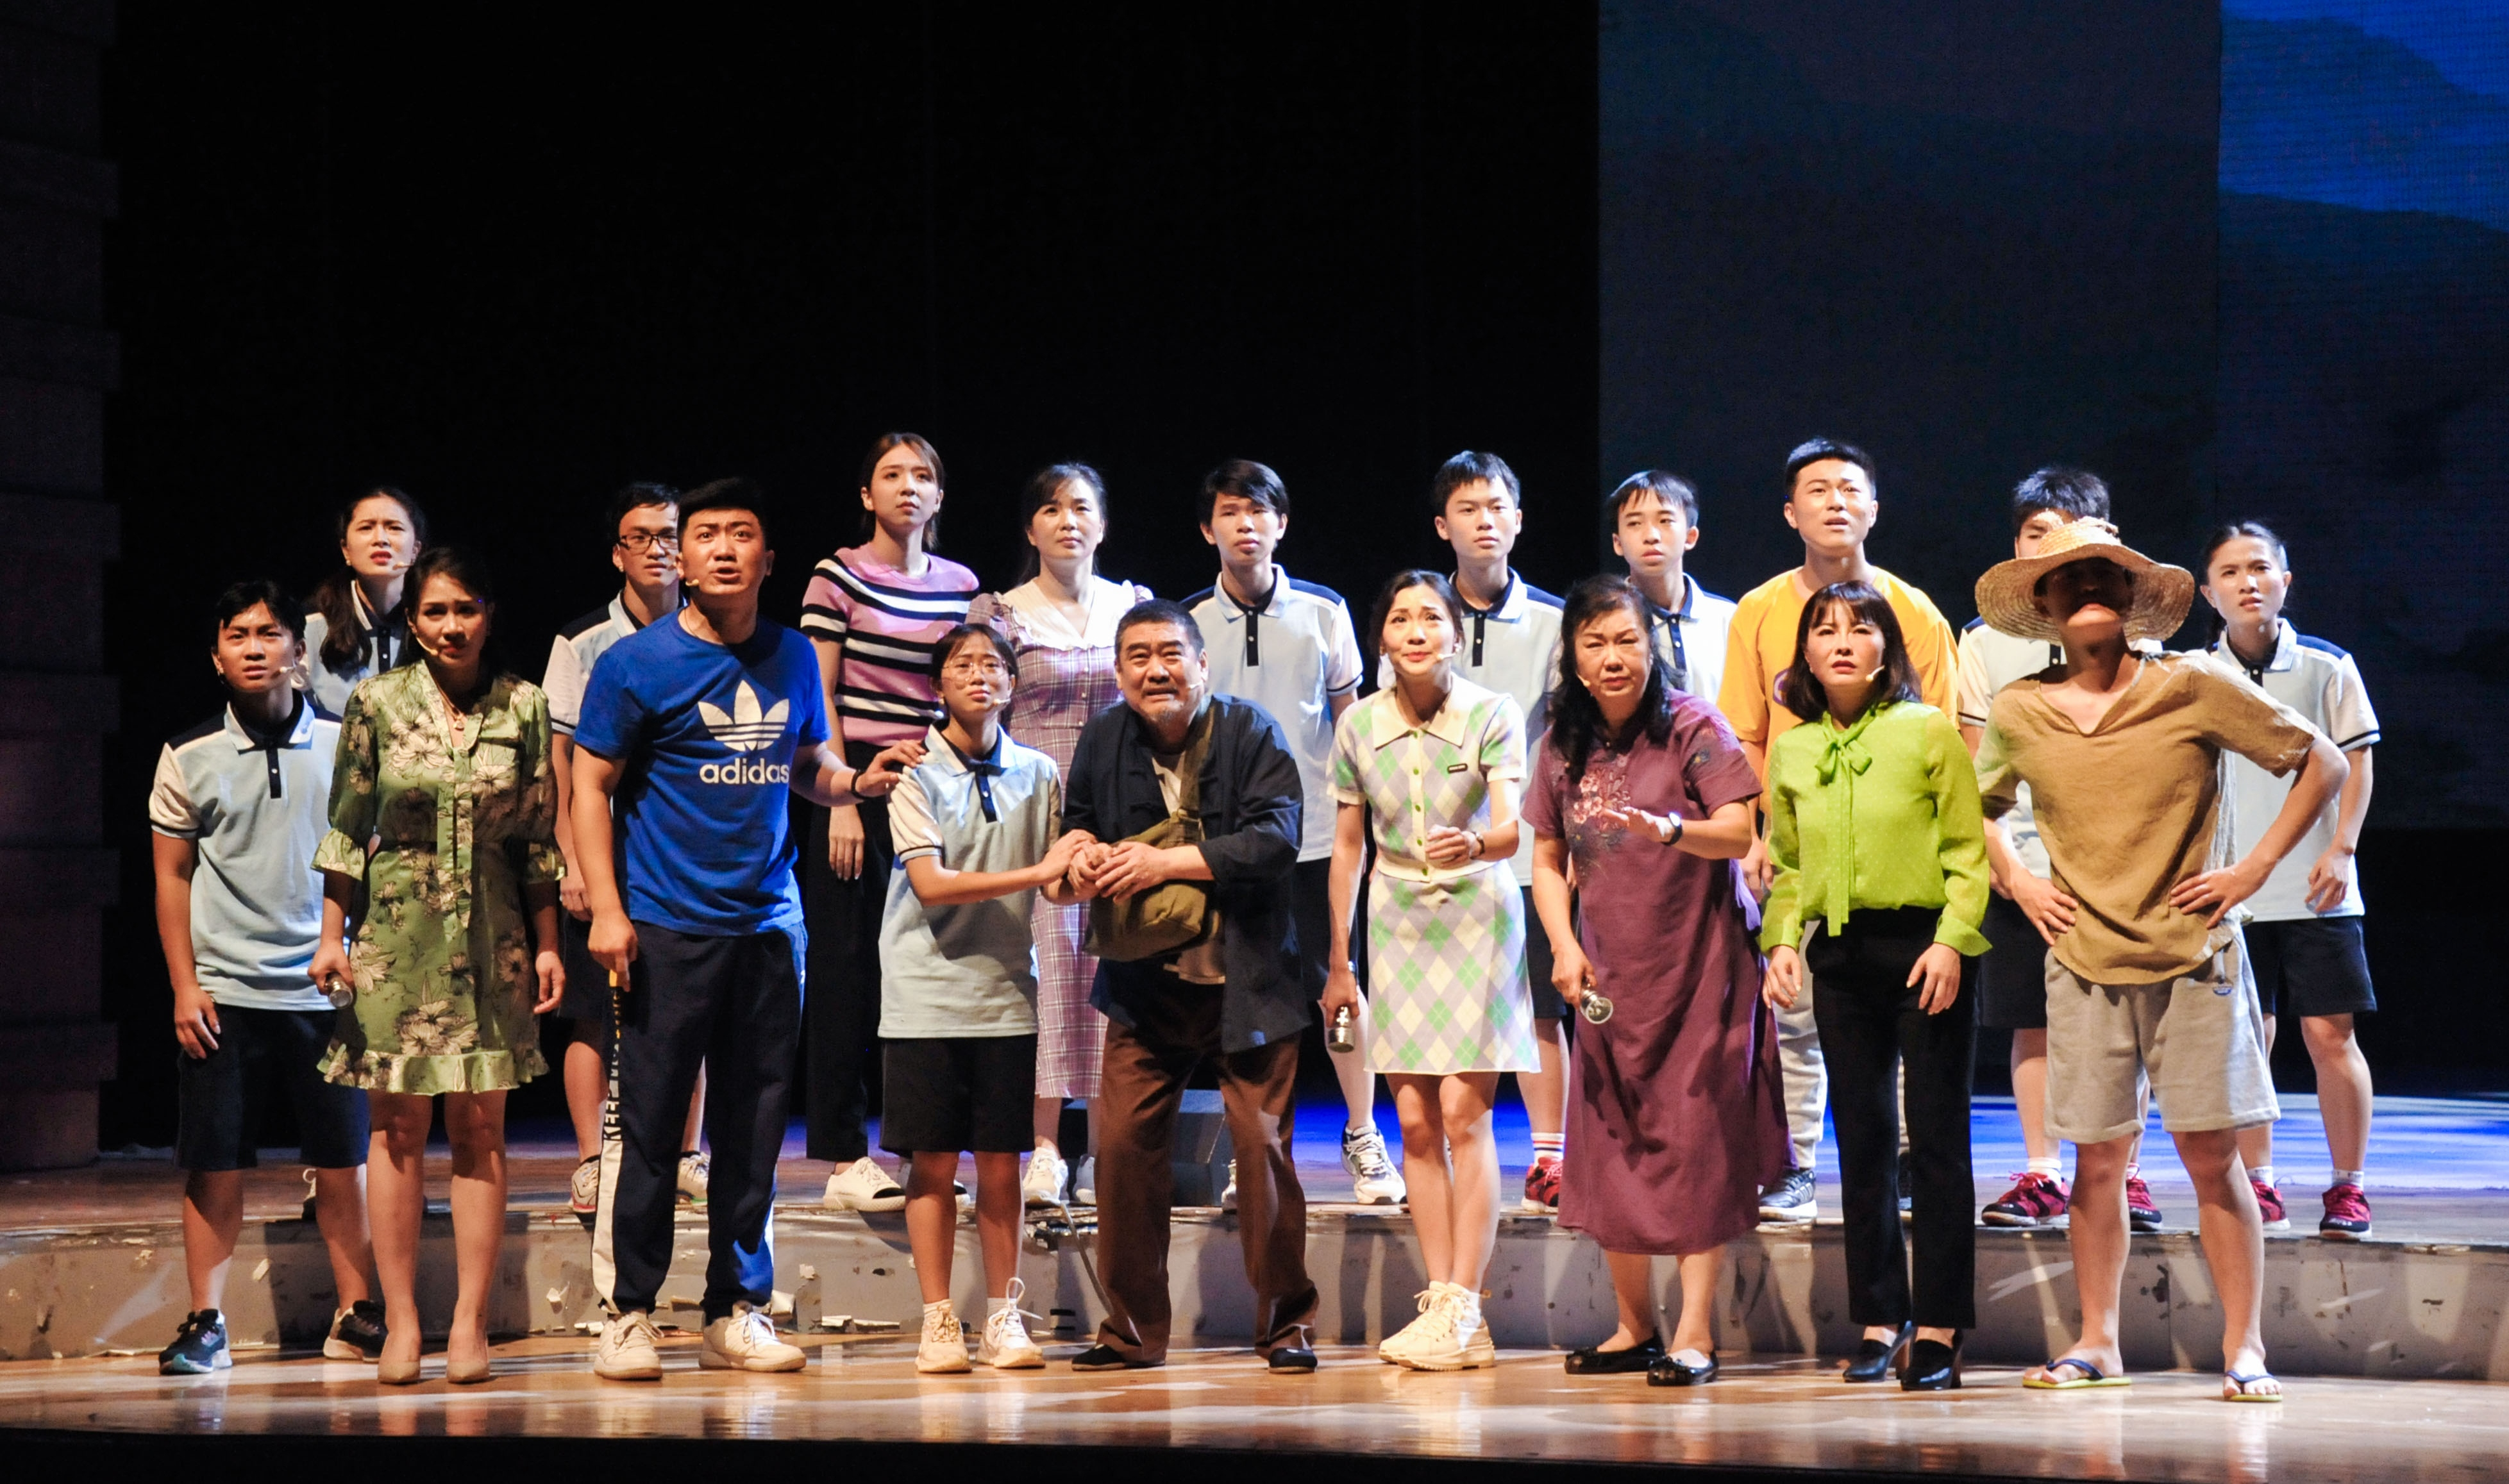 廣州花都原創大型話劇《七彩繩話》獲多項全國大獎